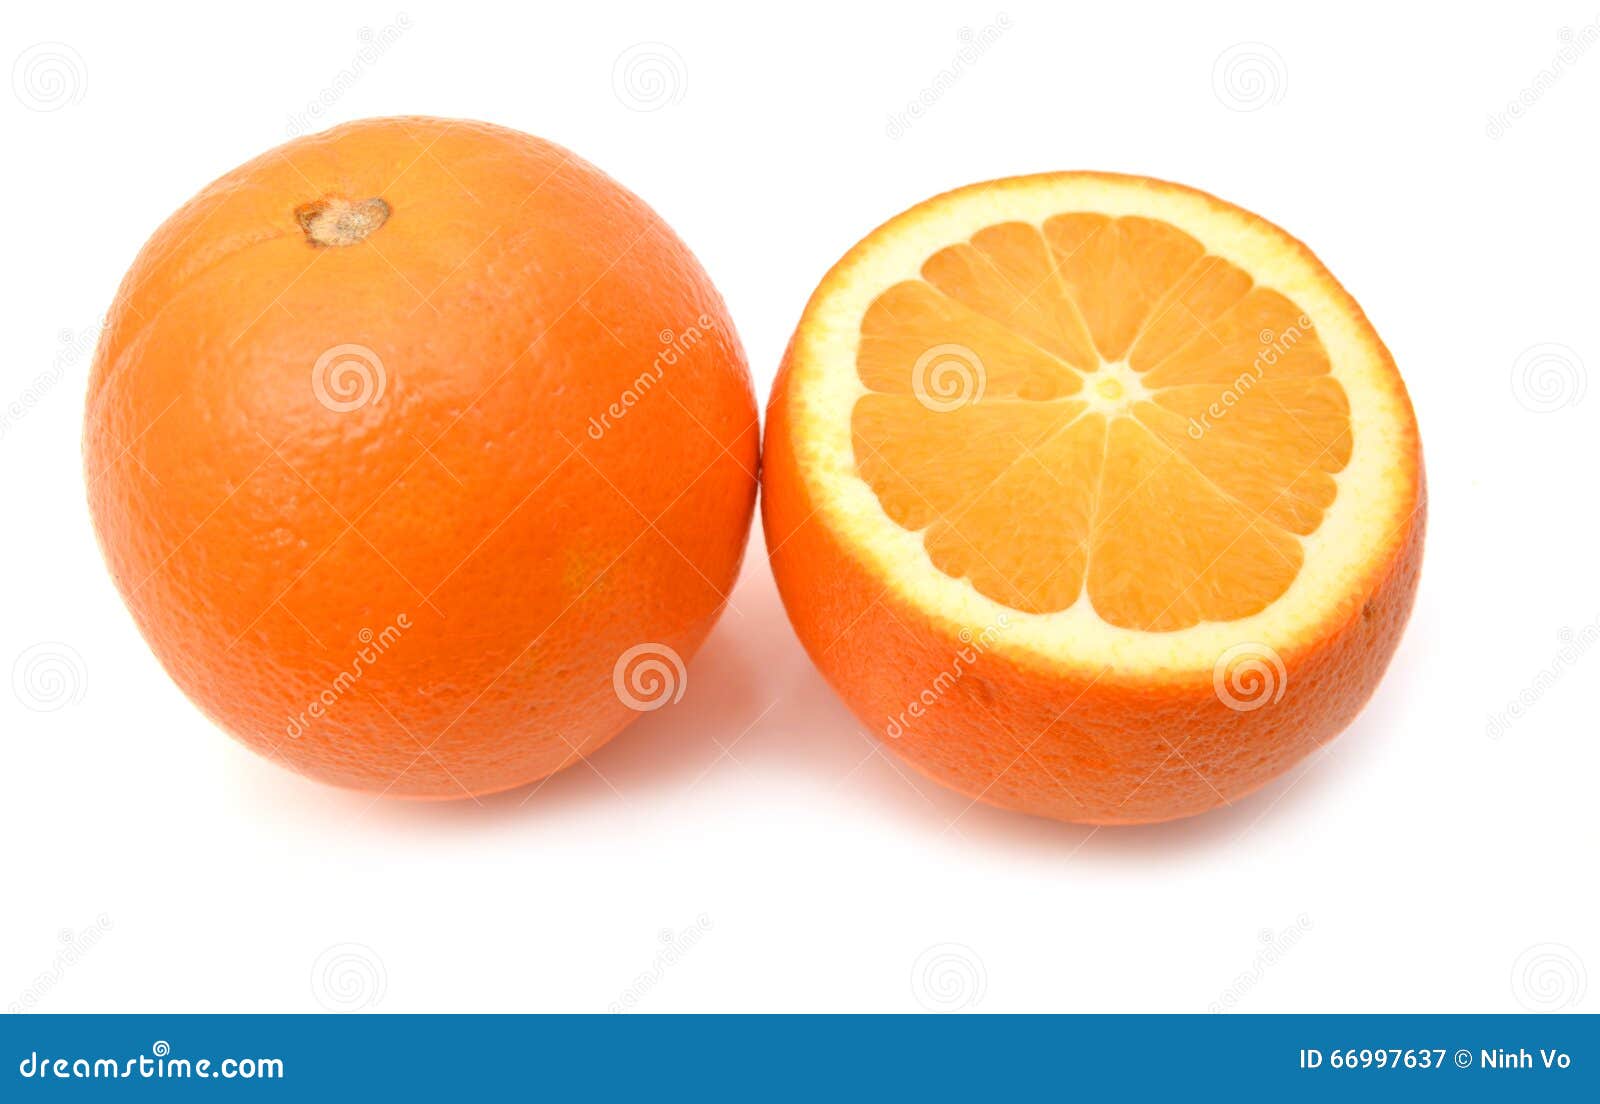 Orange Fruit Stock Image Image Of Food Glossy Fruit 66997637